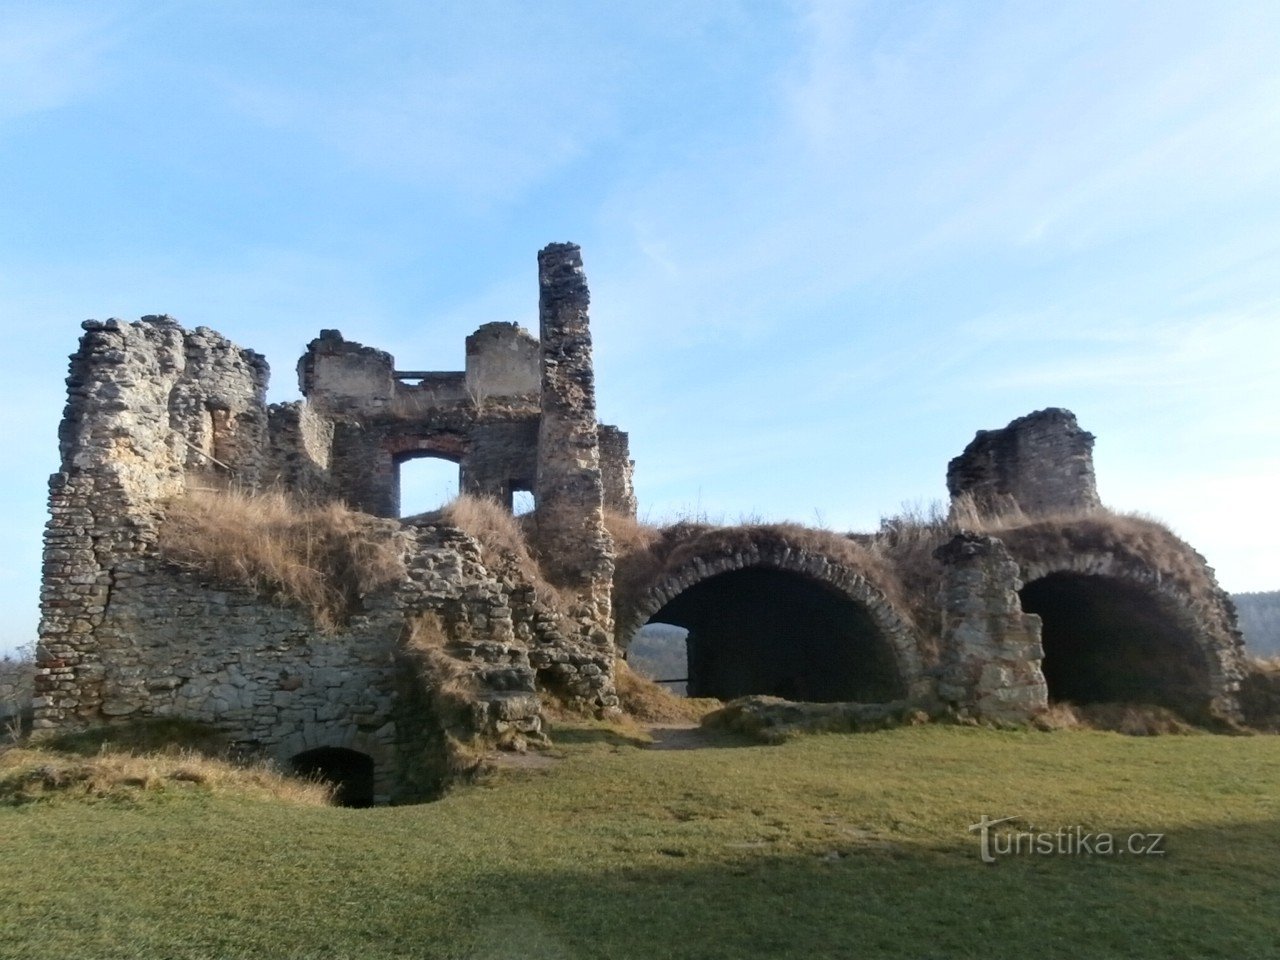 τα ερείπια του κάστρου Zvířetice